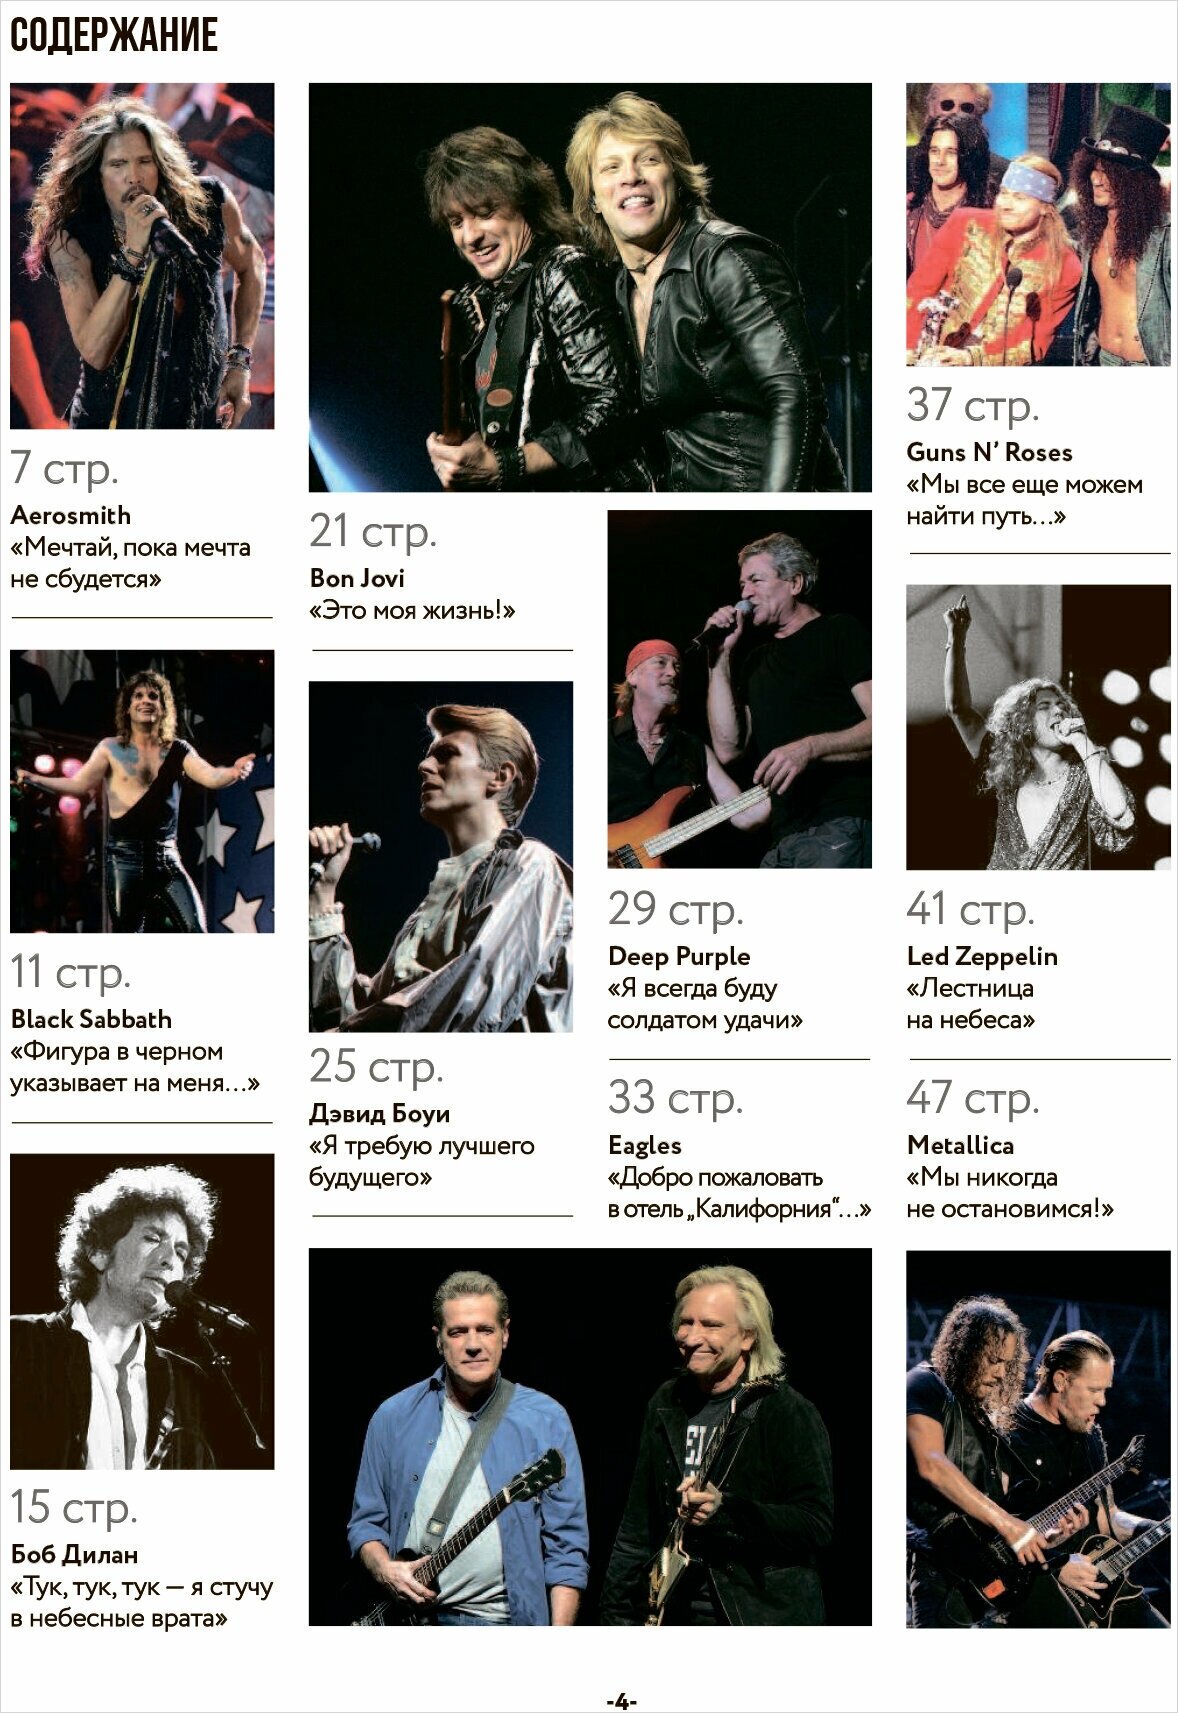 Хедлайнеры зарубежного рока: истории групп и их легендарных альбомов - фото №2